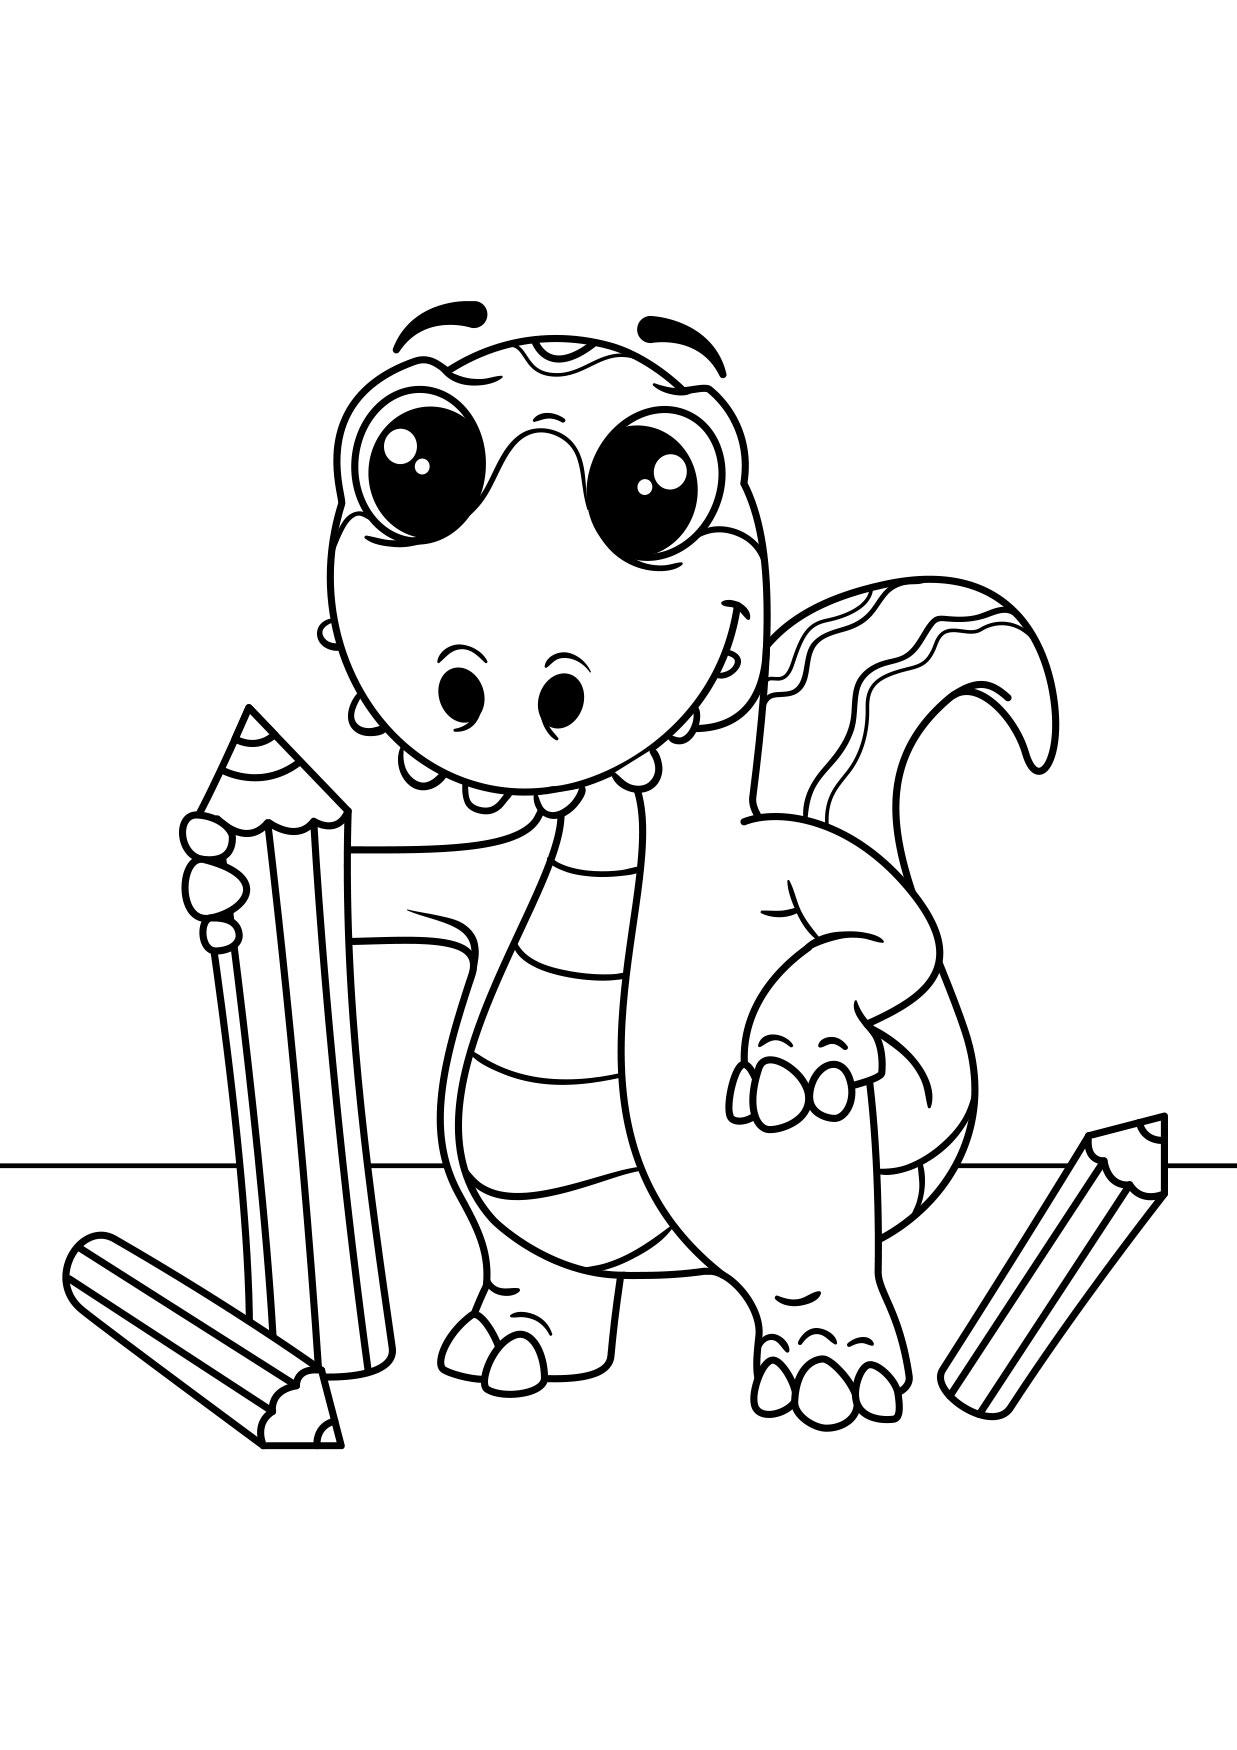 Desenho de Dinossauro para colorir  Desenhos para colorir e imprimir gratis